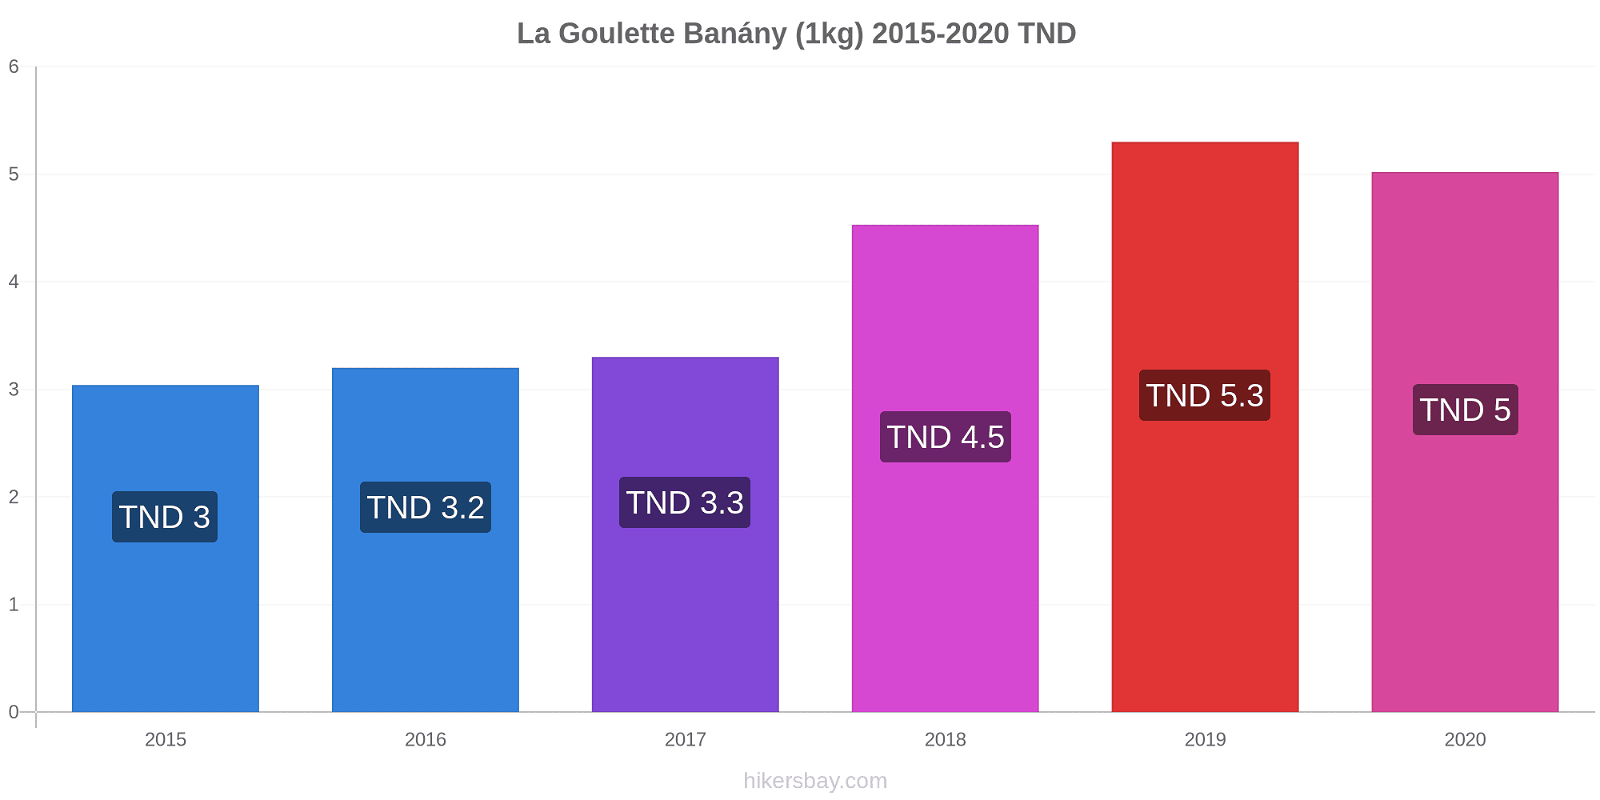 La Goulette změny cen Banány (1kg) hikersbay.com